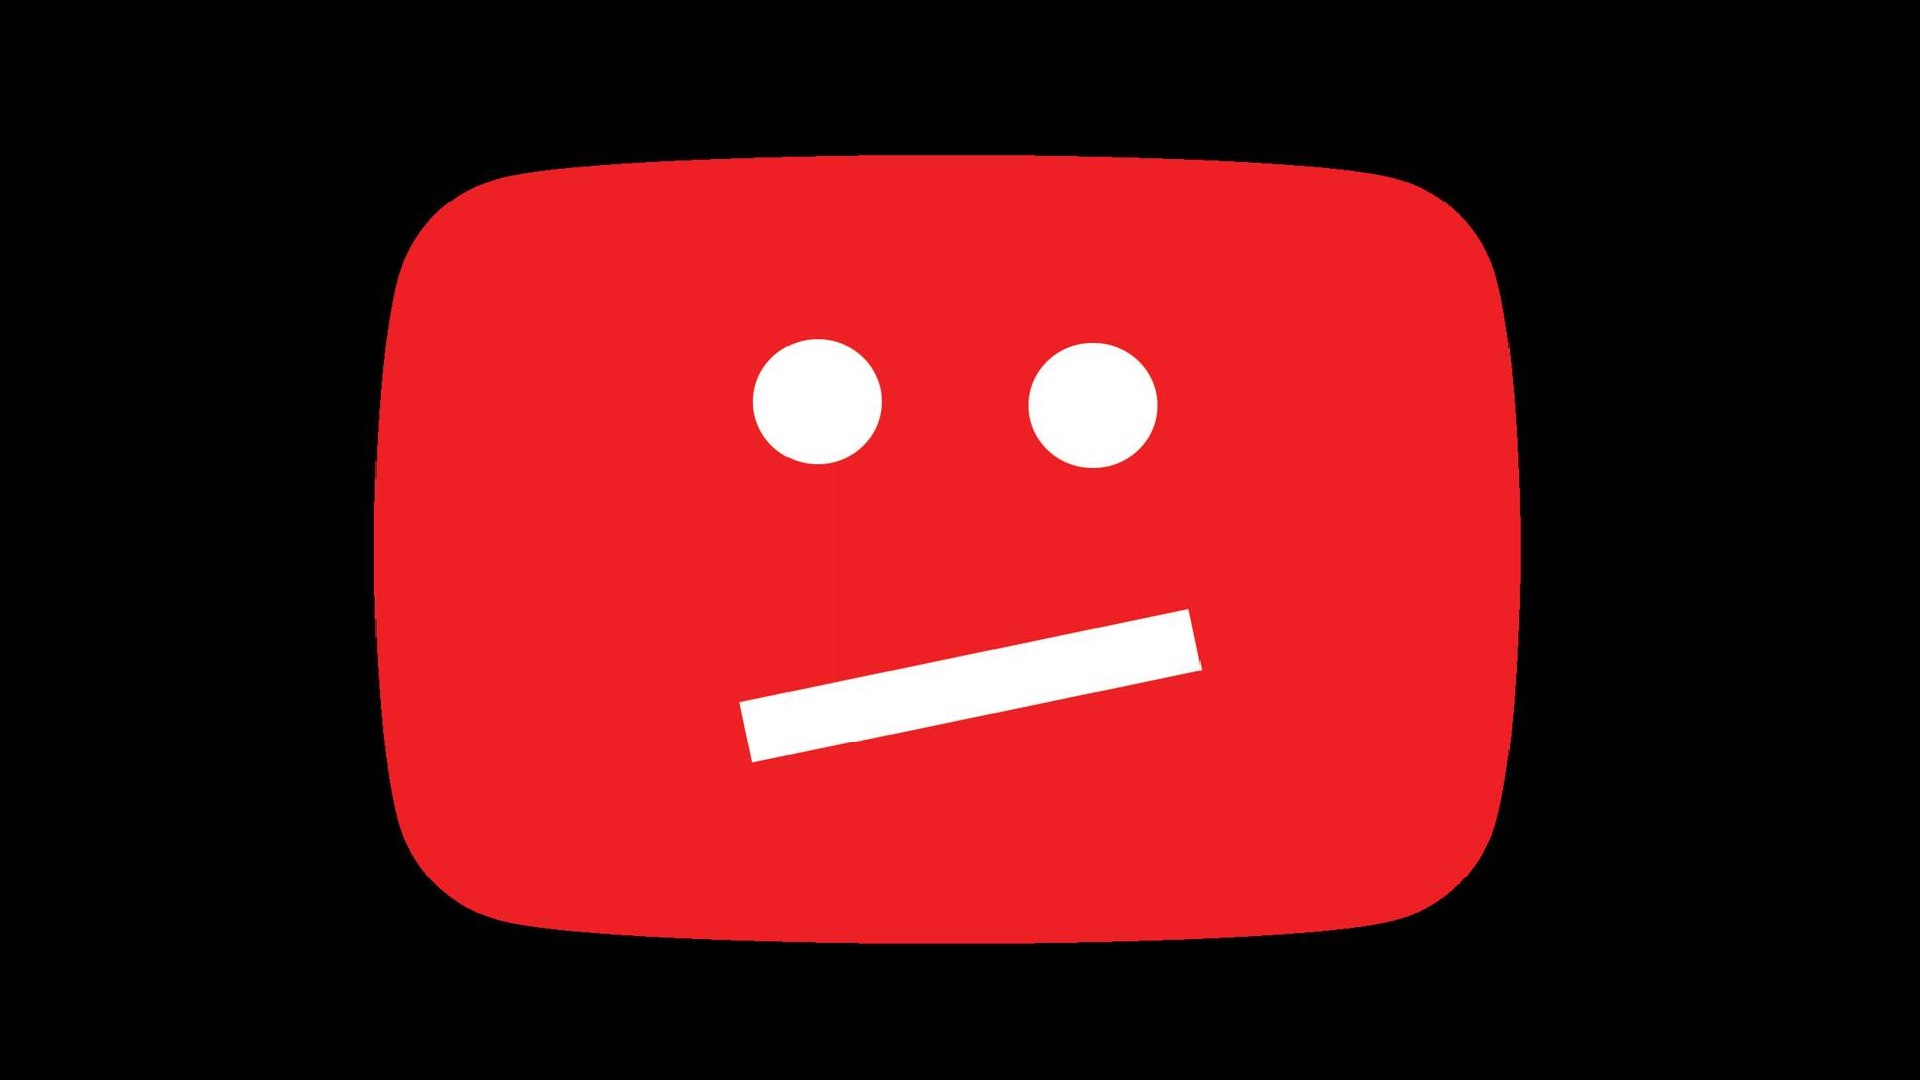 Youtube nación en 2005 en California, Estados Unidos, y posteriormente fue comprado por Google. En 2019, registró unos ingresos de USD 15,15 miles de millones (Foto: Especial)